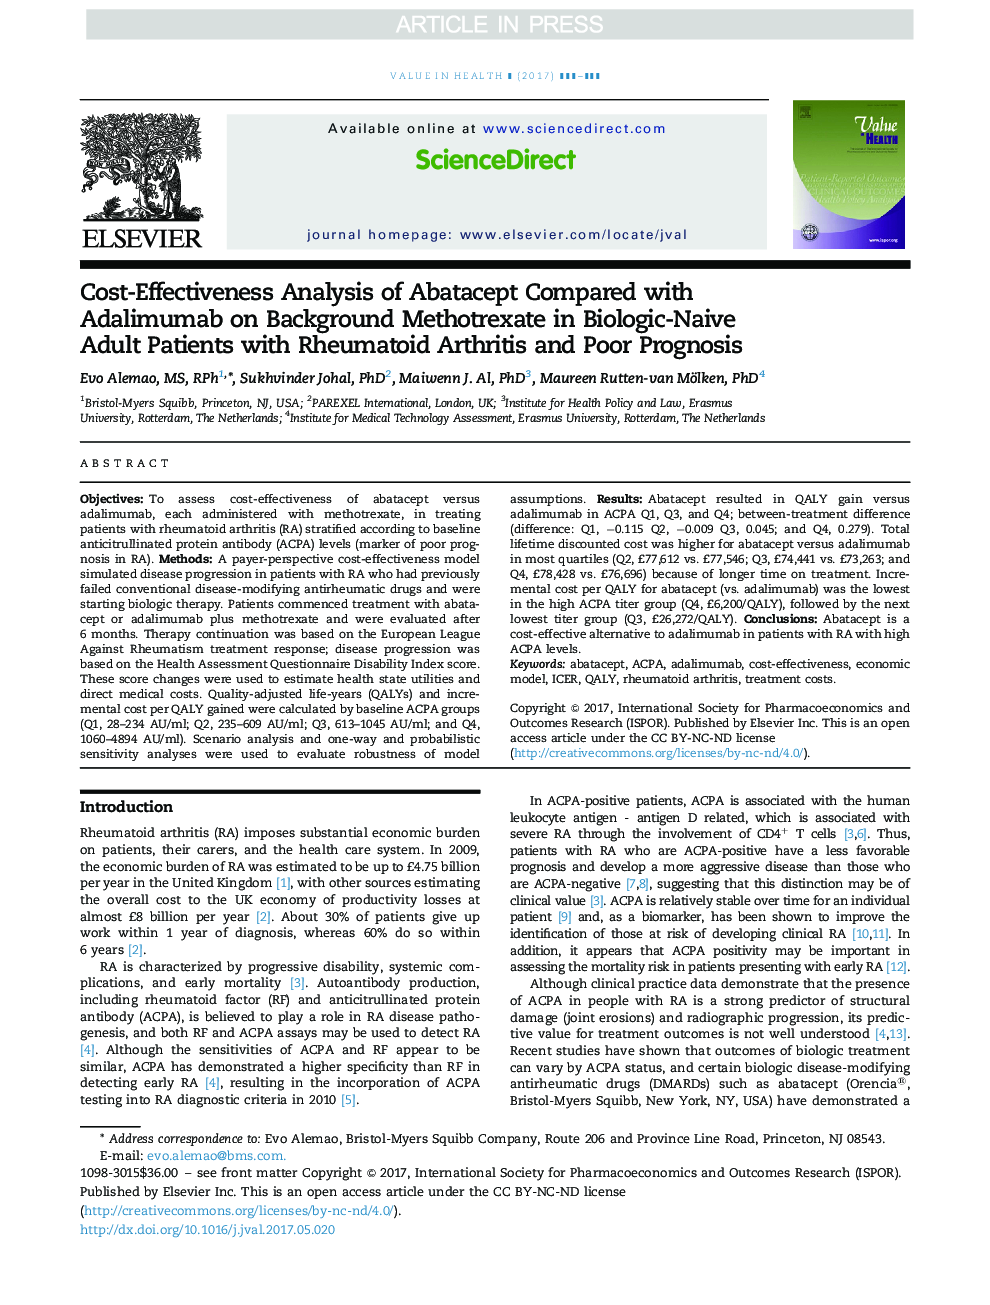 تجزیه و تحلیل هزینه-اثربخشی آباتاسپت در مقایسه با آدالیموآب در پس زمینه متوترکسات در بیماران مبتلا به آرتریت روماتوئید و پیش آگهی ضعیف در بیماران مبتلا به بیولوژیک 